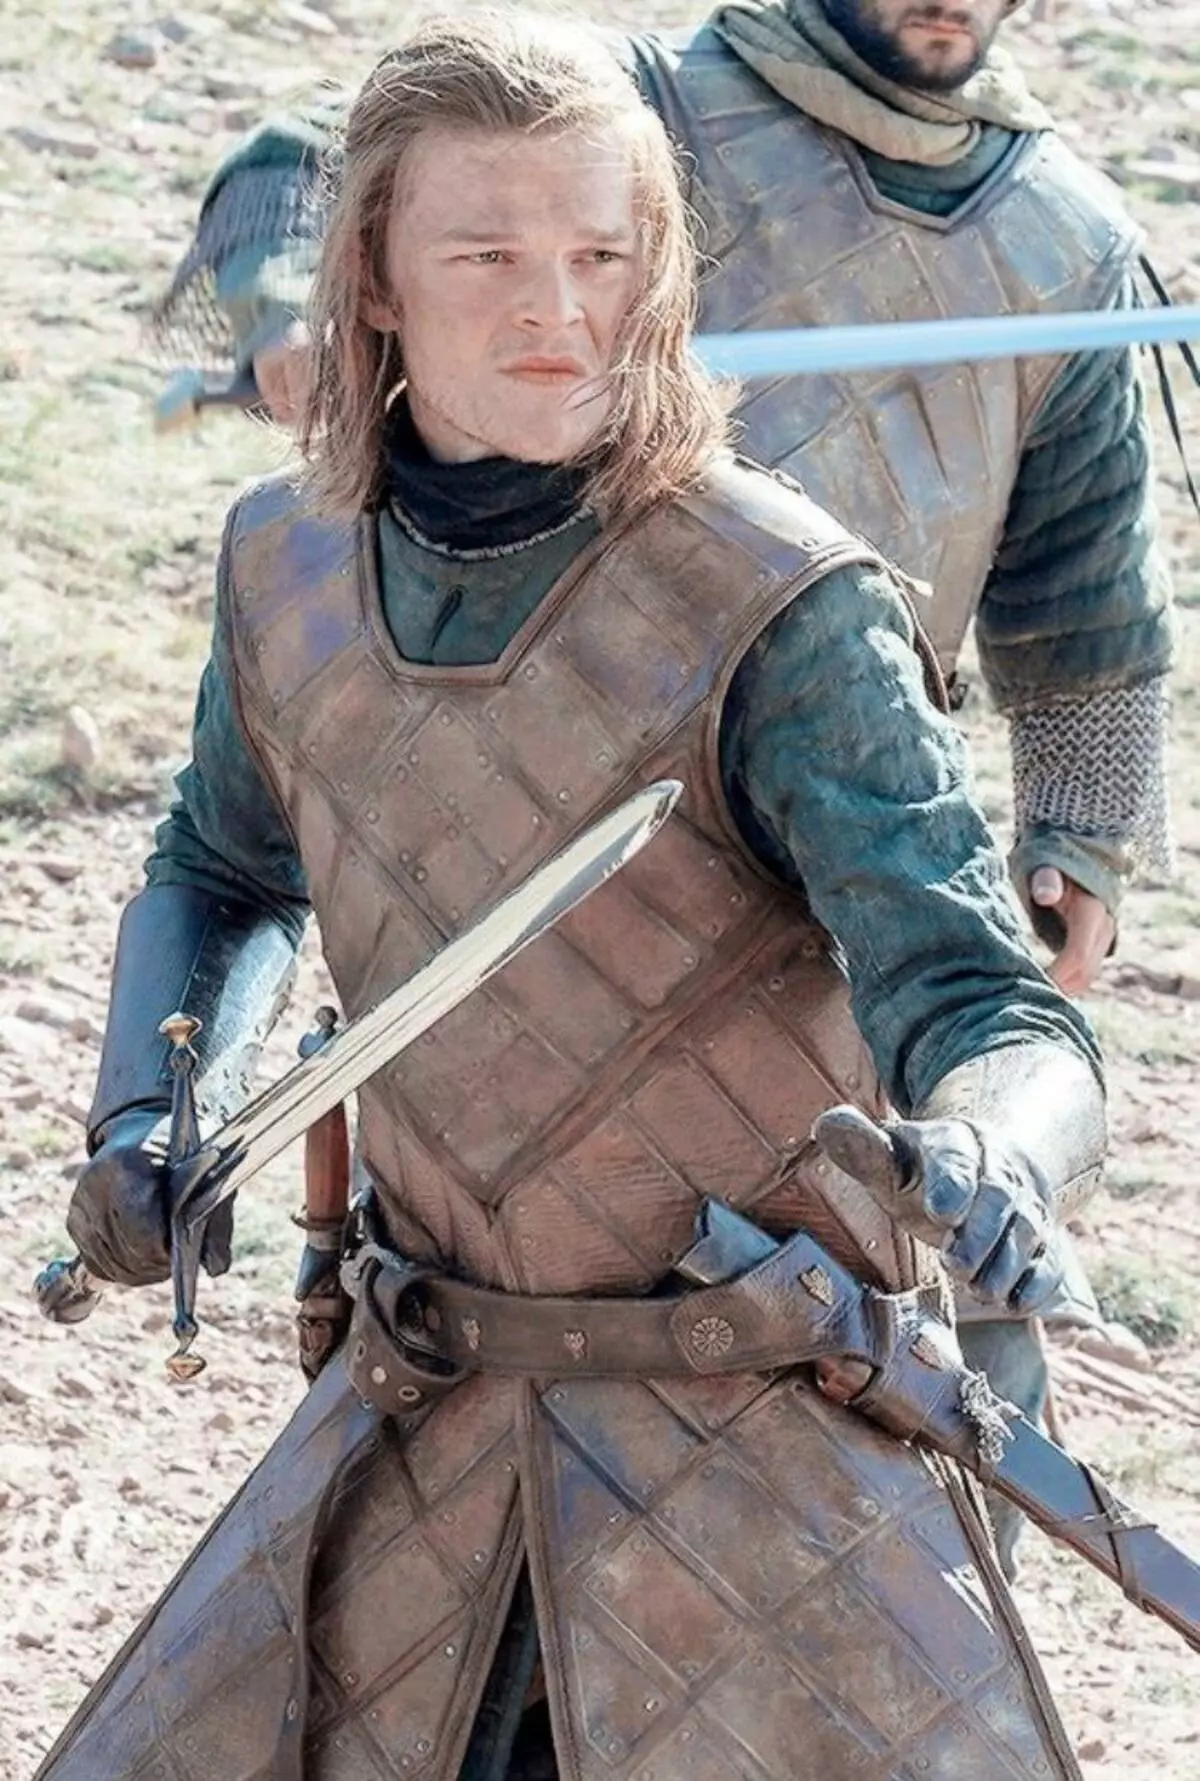 Ekran Eddard Stark odtwarzał jeden z głównych bohaterów w serialu telewizora 